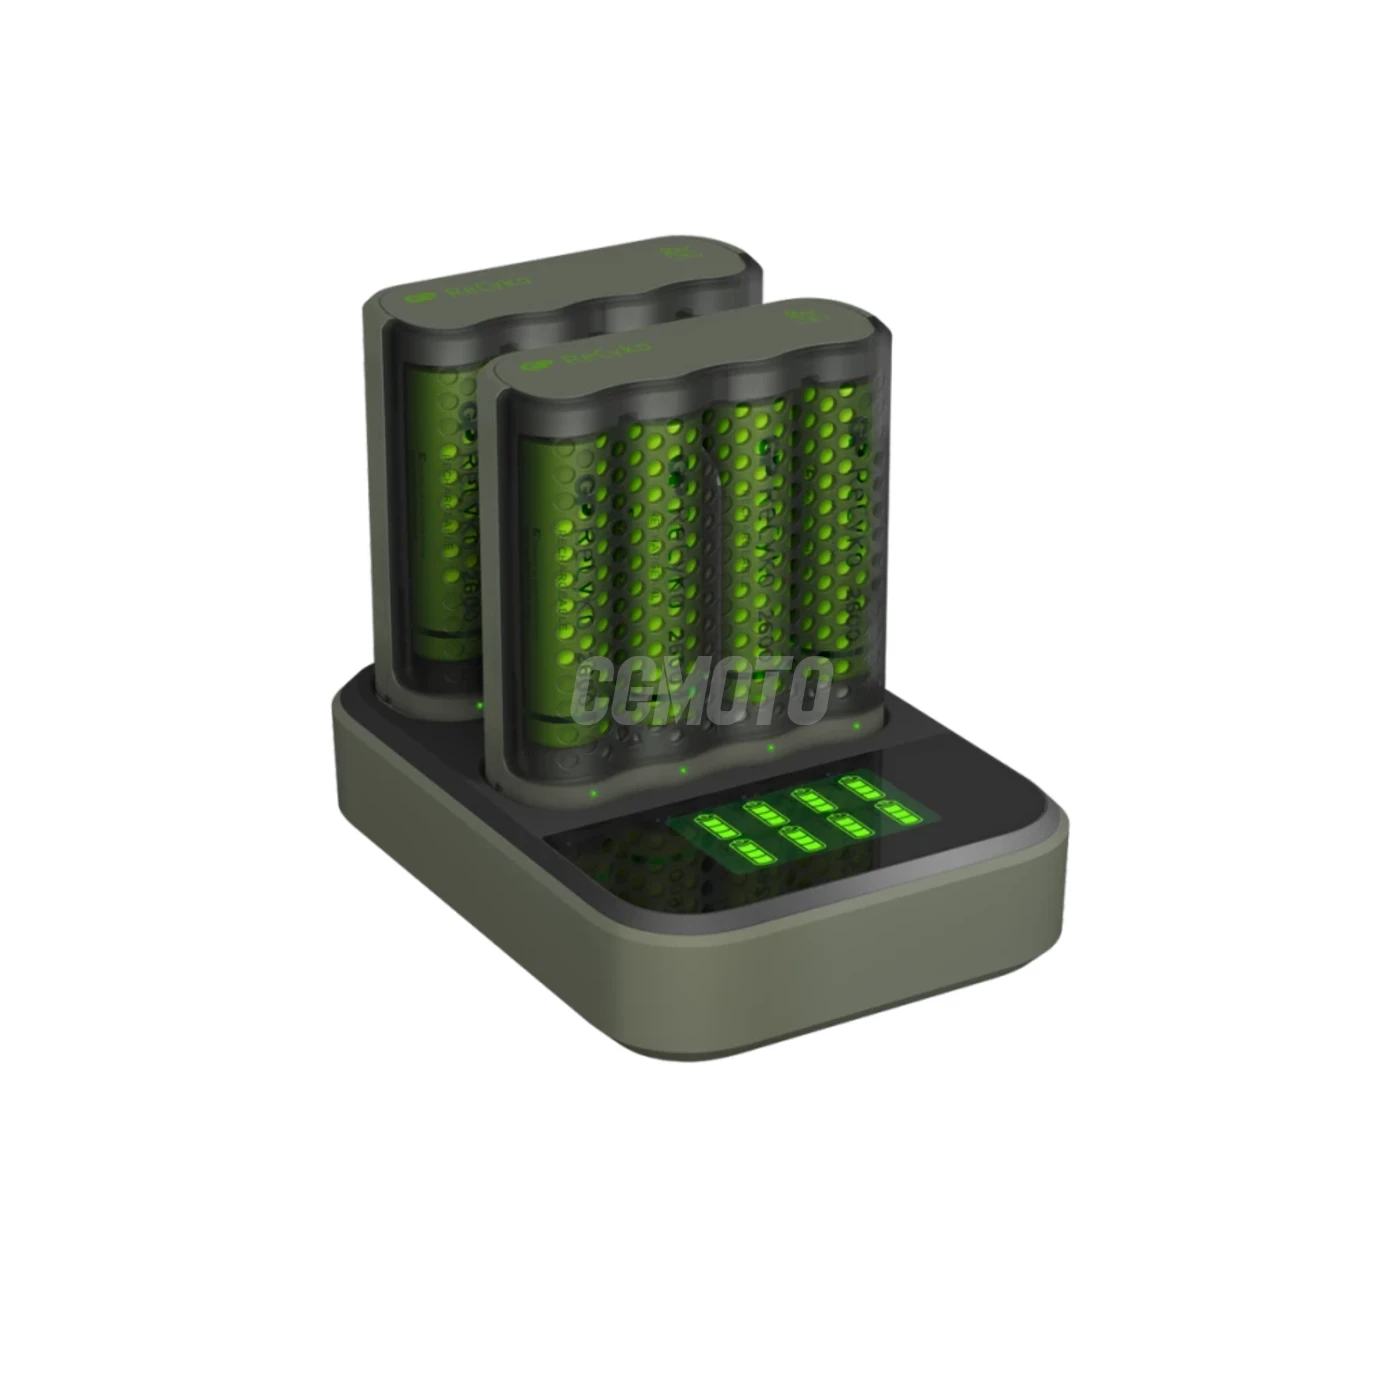 Caricatore rapido 2-4 ore M451 USB + 8 batterie AA 2600mAh + Dock D851